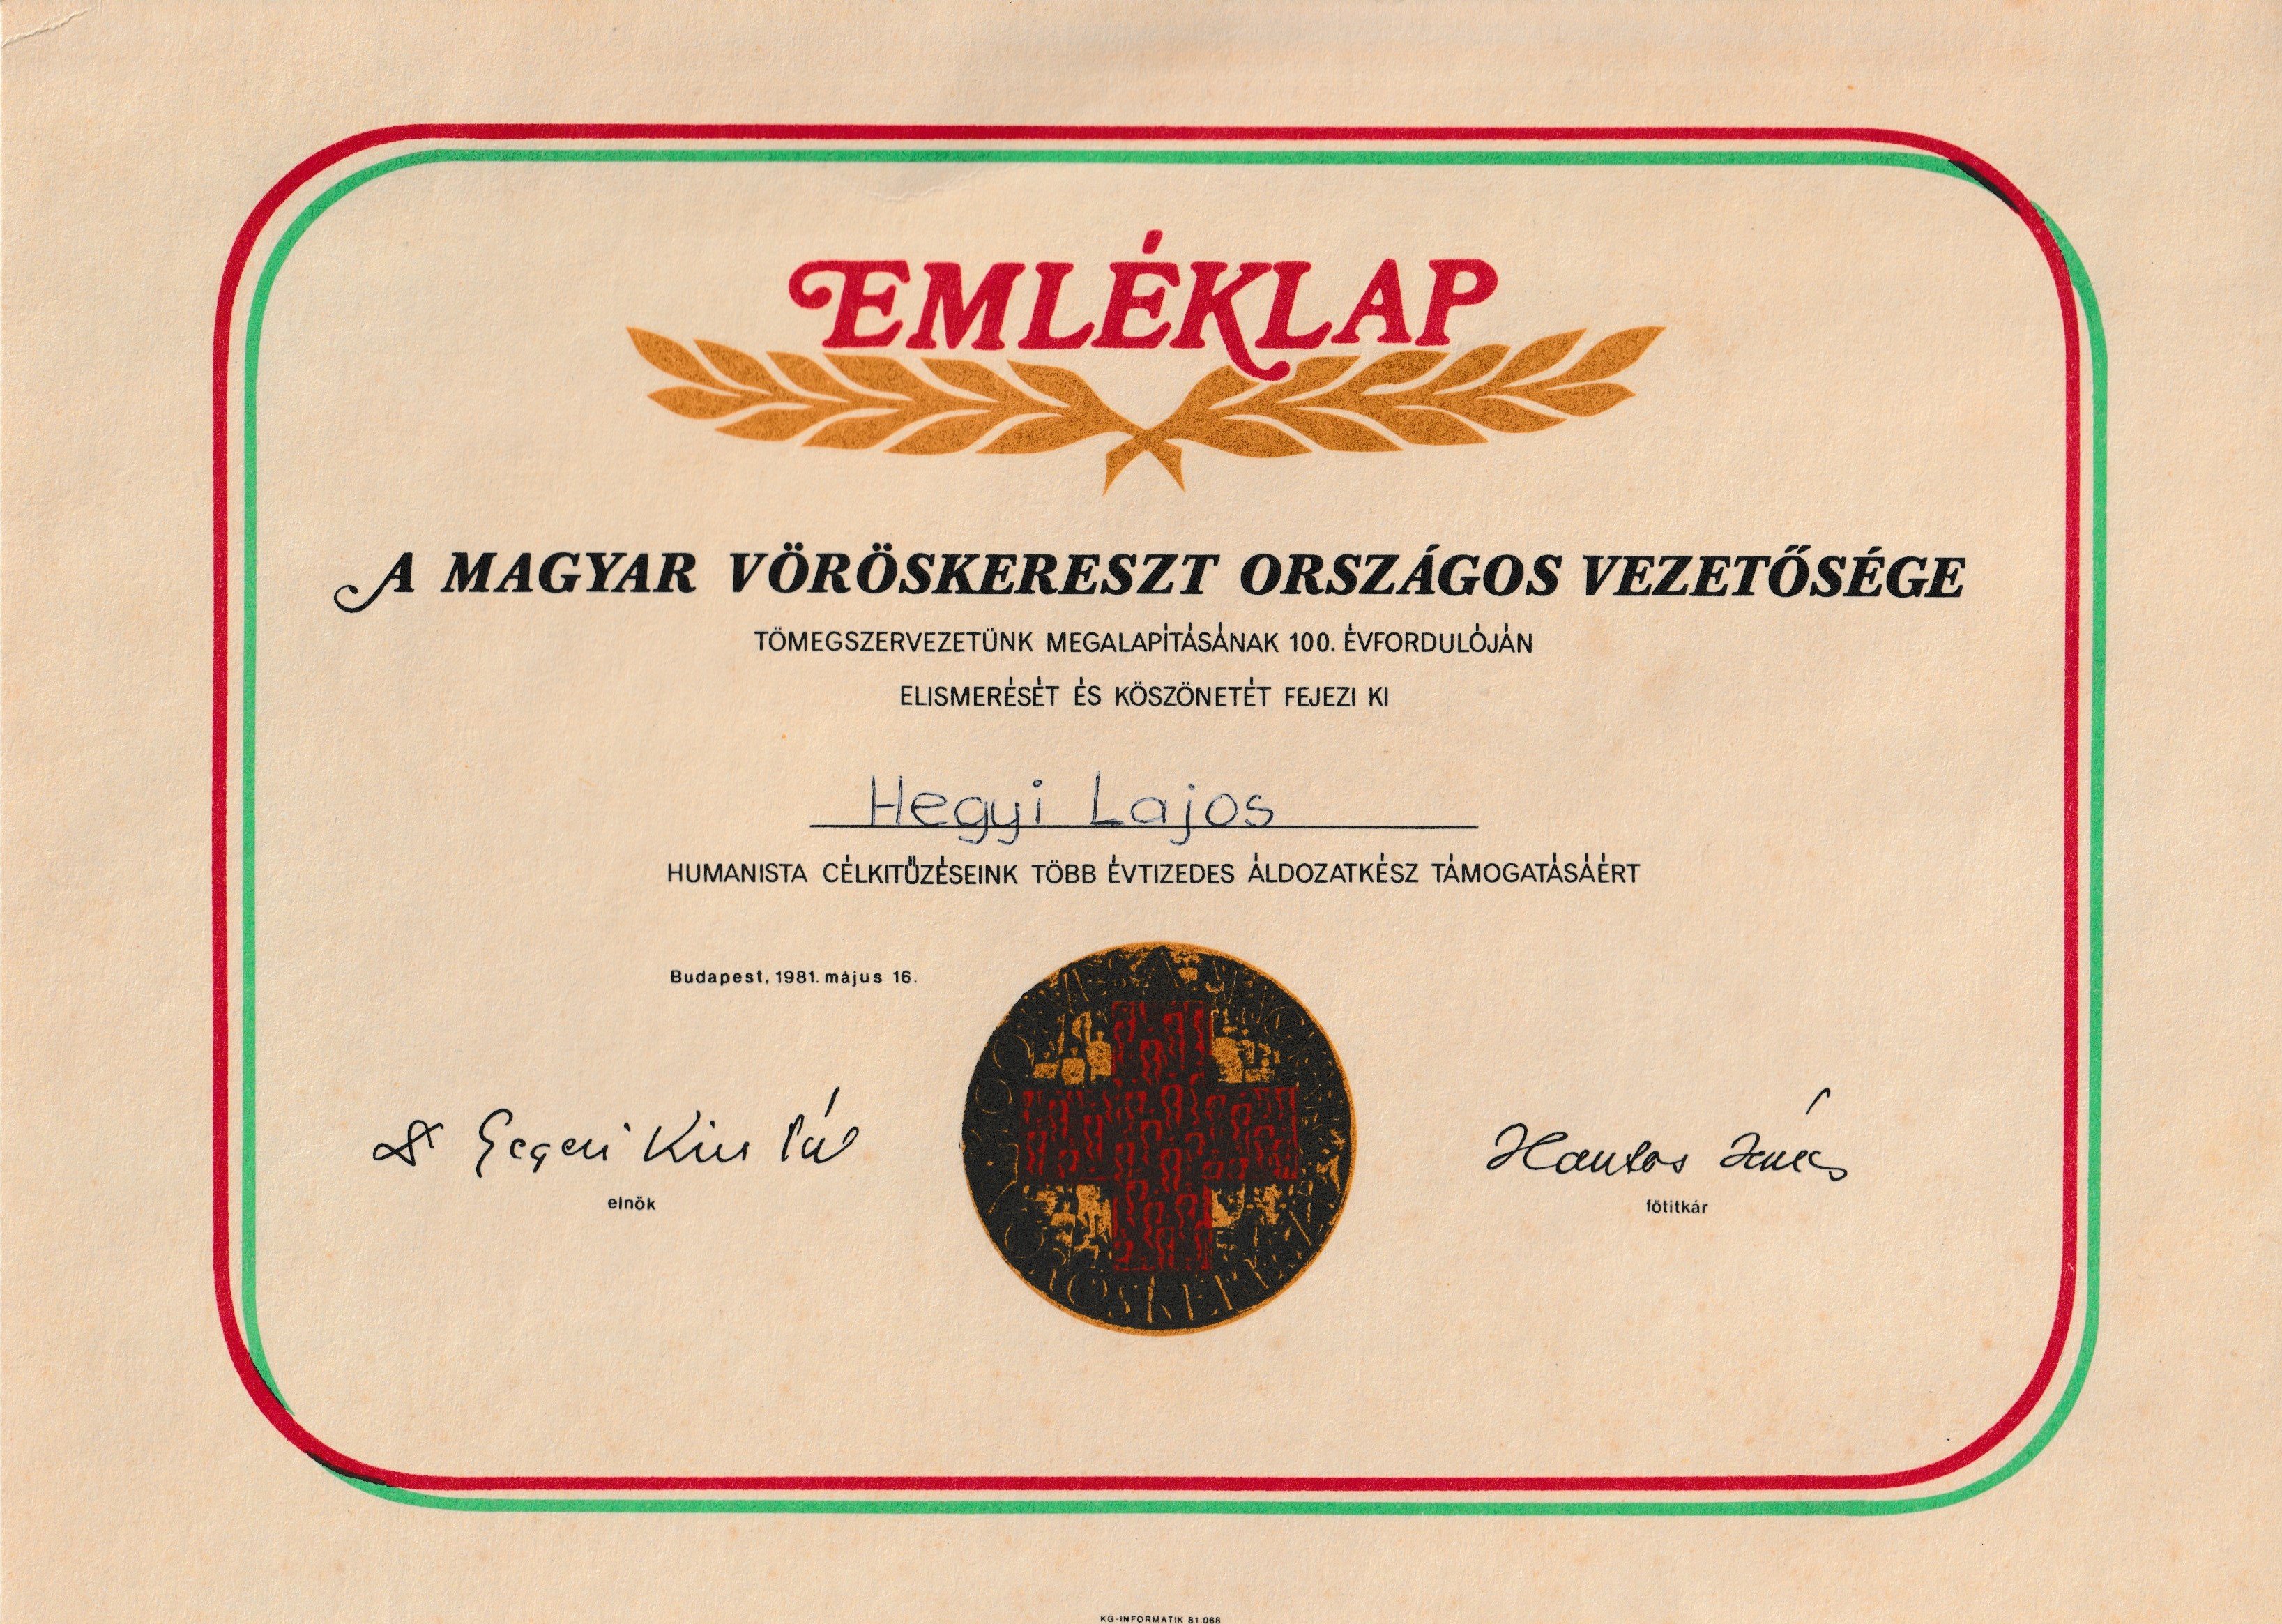 A Magyar Vöröskereszt centenáriumi emléklapja Hegyi Lajosnak (Tapolcai Városi Múzeum CC BY-NC-SA)